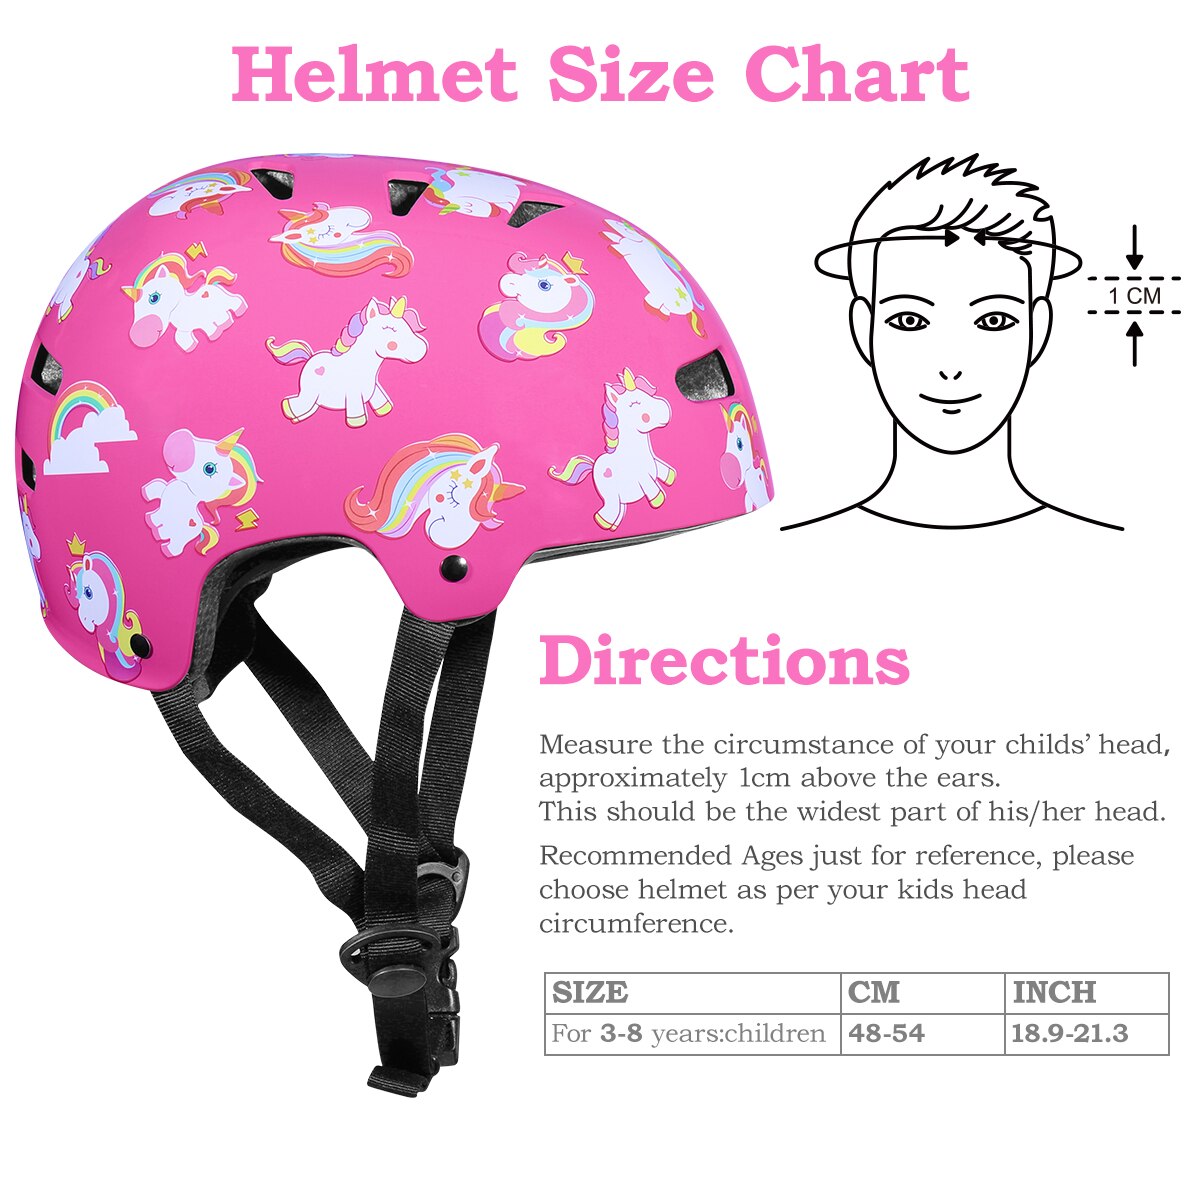 Kids Scooter Helmet Protective Gear